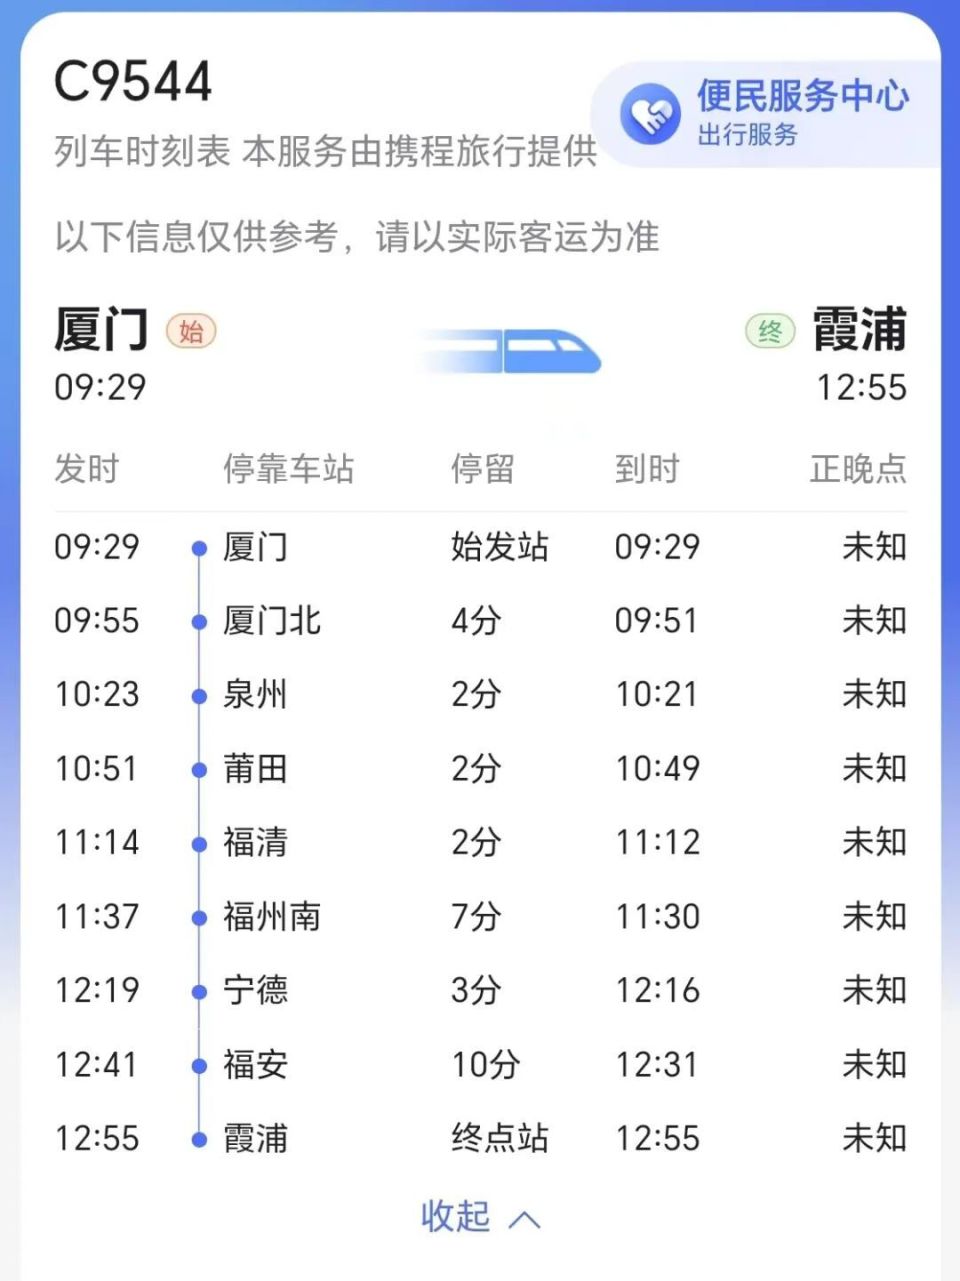 霞浦动车站将开通往返厦门首末站列车